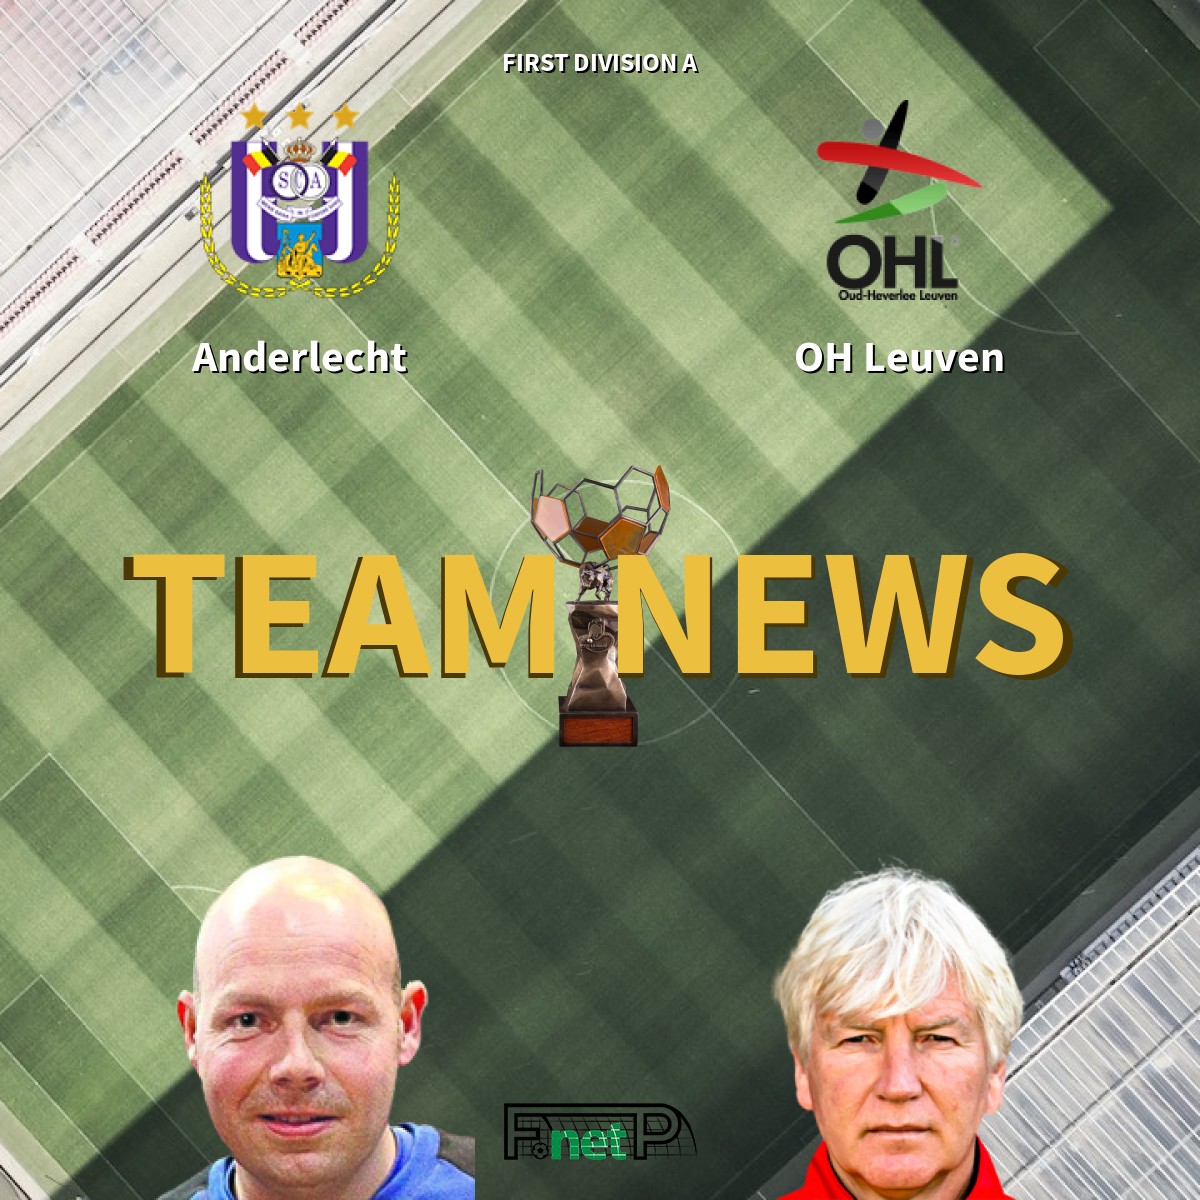 First Division A News: RSC Anderlecht vs Oud-Heverlee Leuven